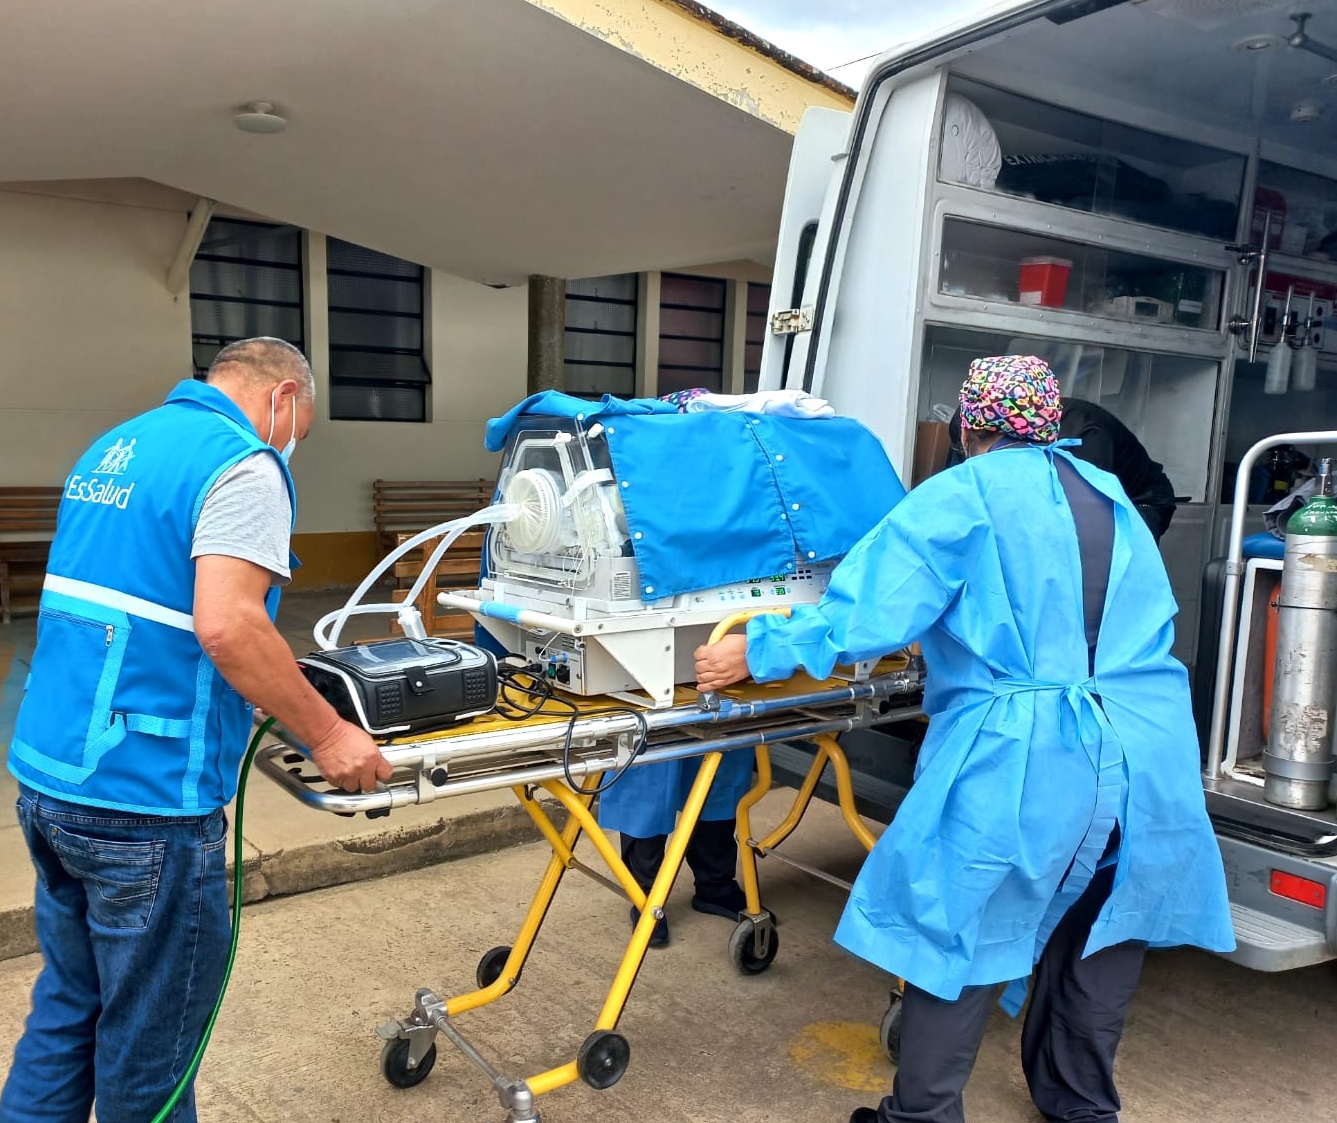 Essalud - Essalud Amazonas traslada a bebe asegurada en ambulancia aérea al INCOR para atención especializada